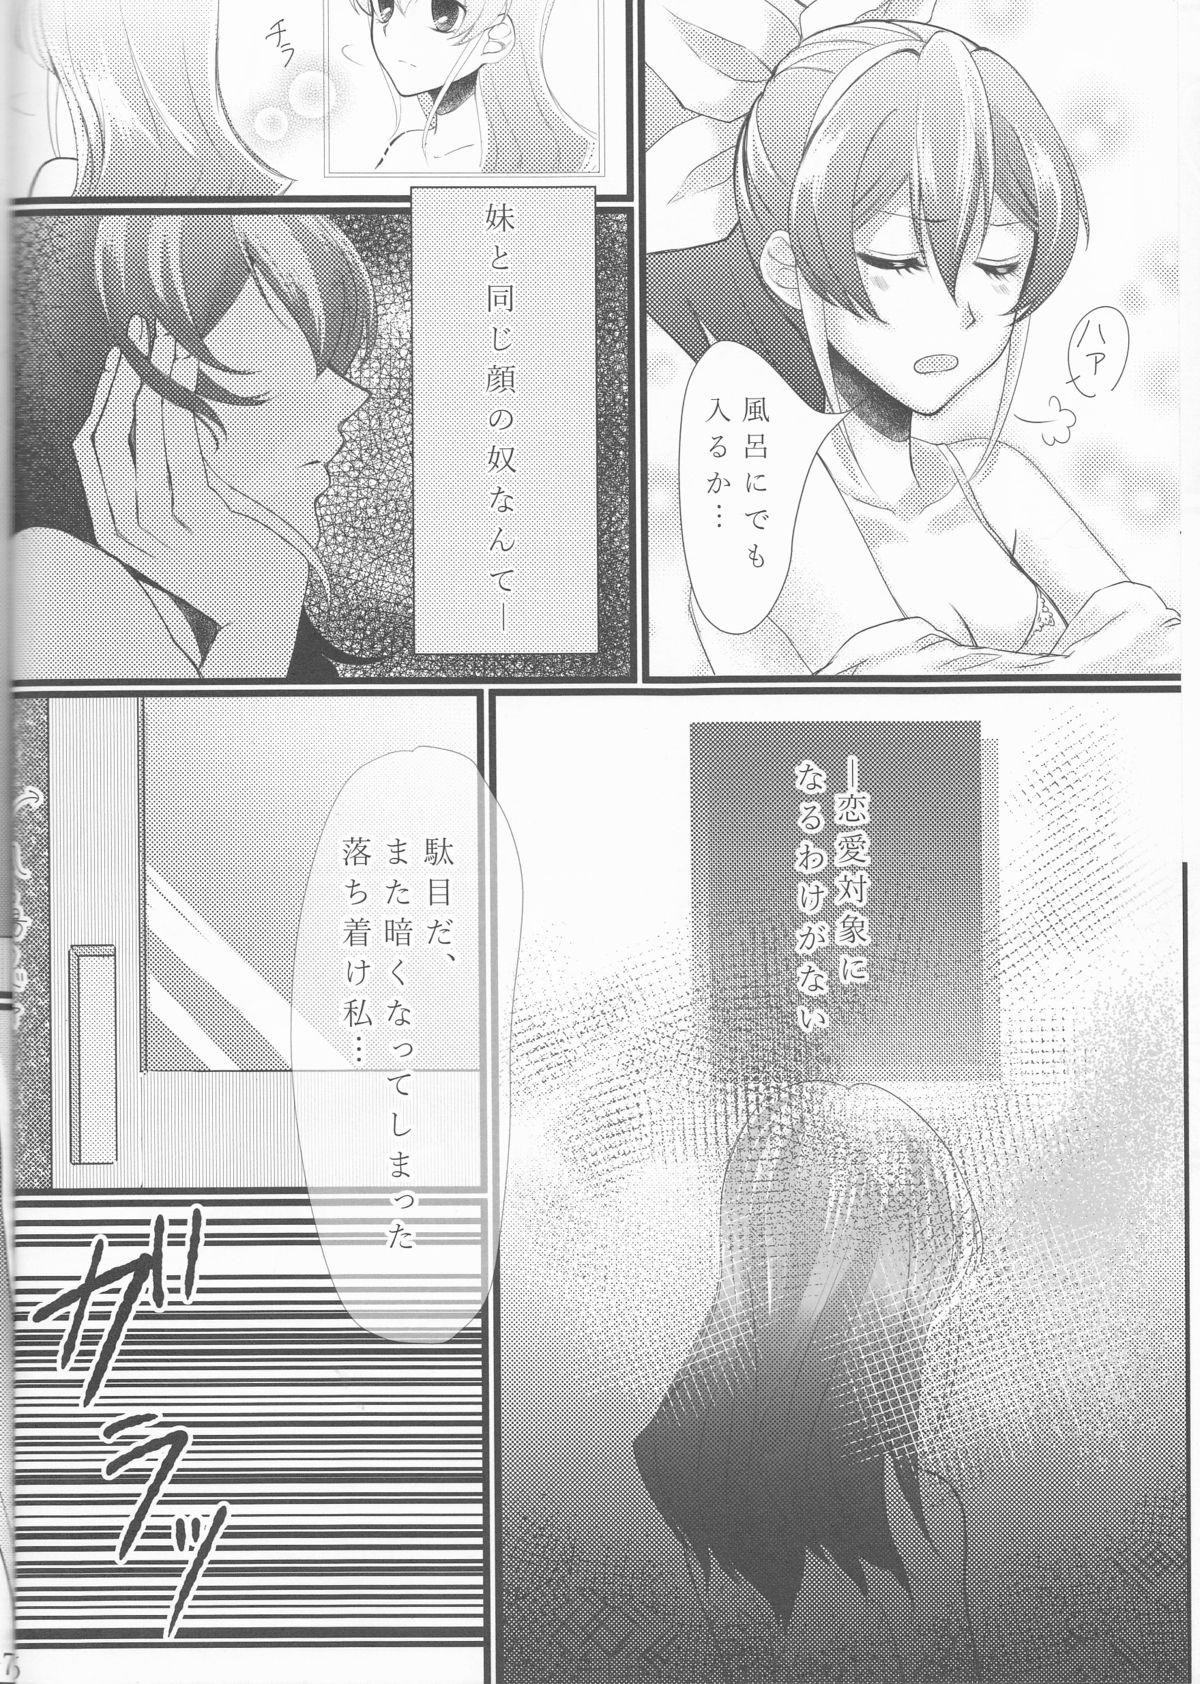 Metendo Hoshoku Kankei ni Aru Serena to Shun ga Renai Kanjou o Idaku to Kou Naru. - Yu gi oh arc v Tinytits - Page 7